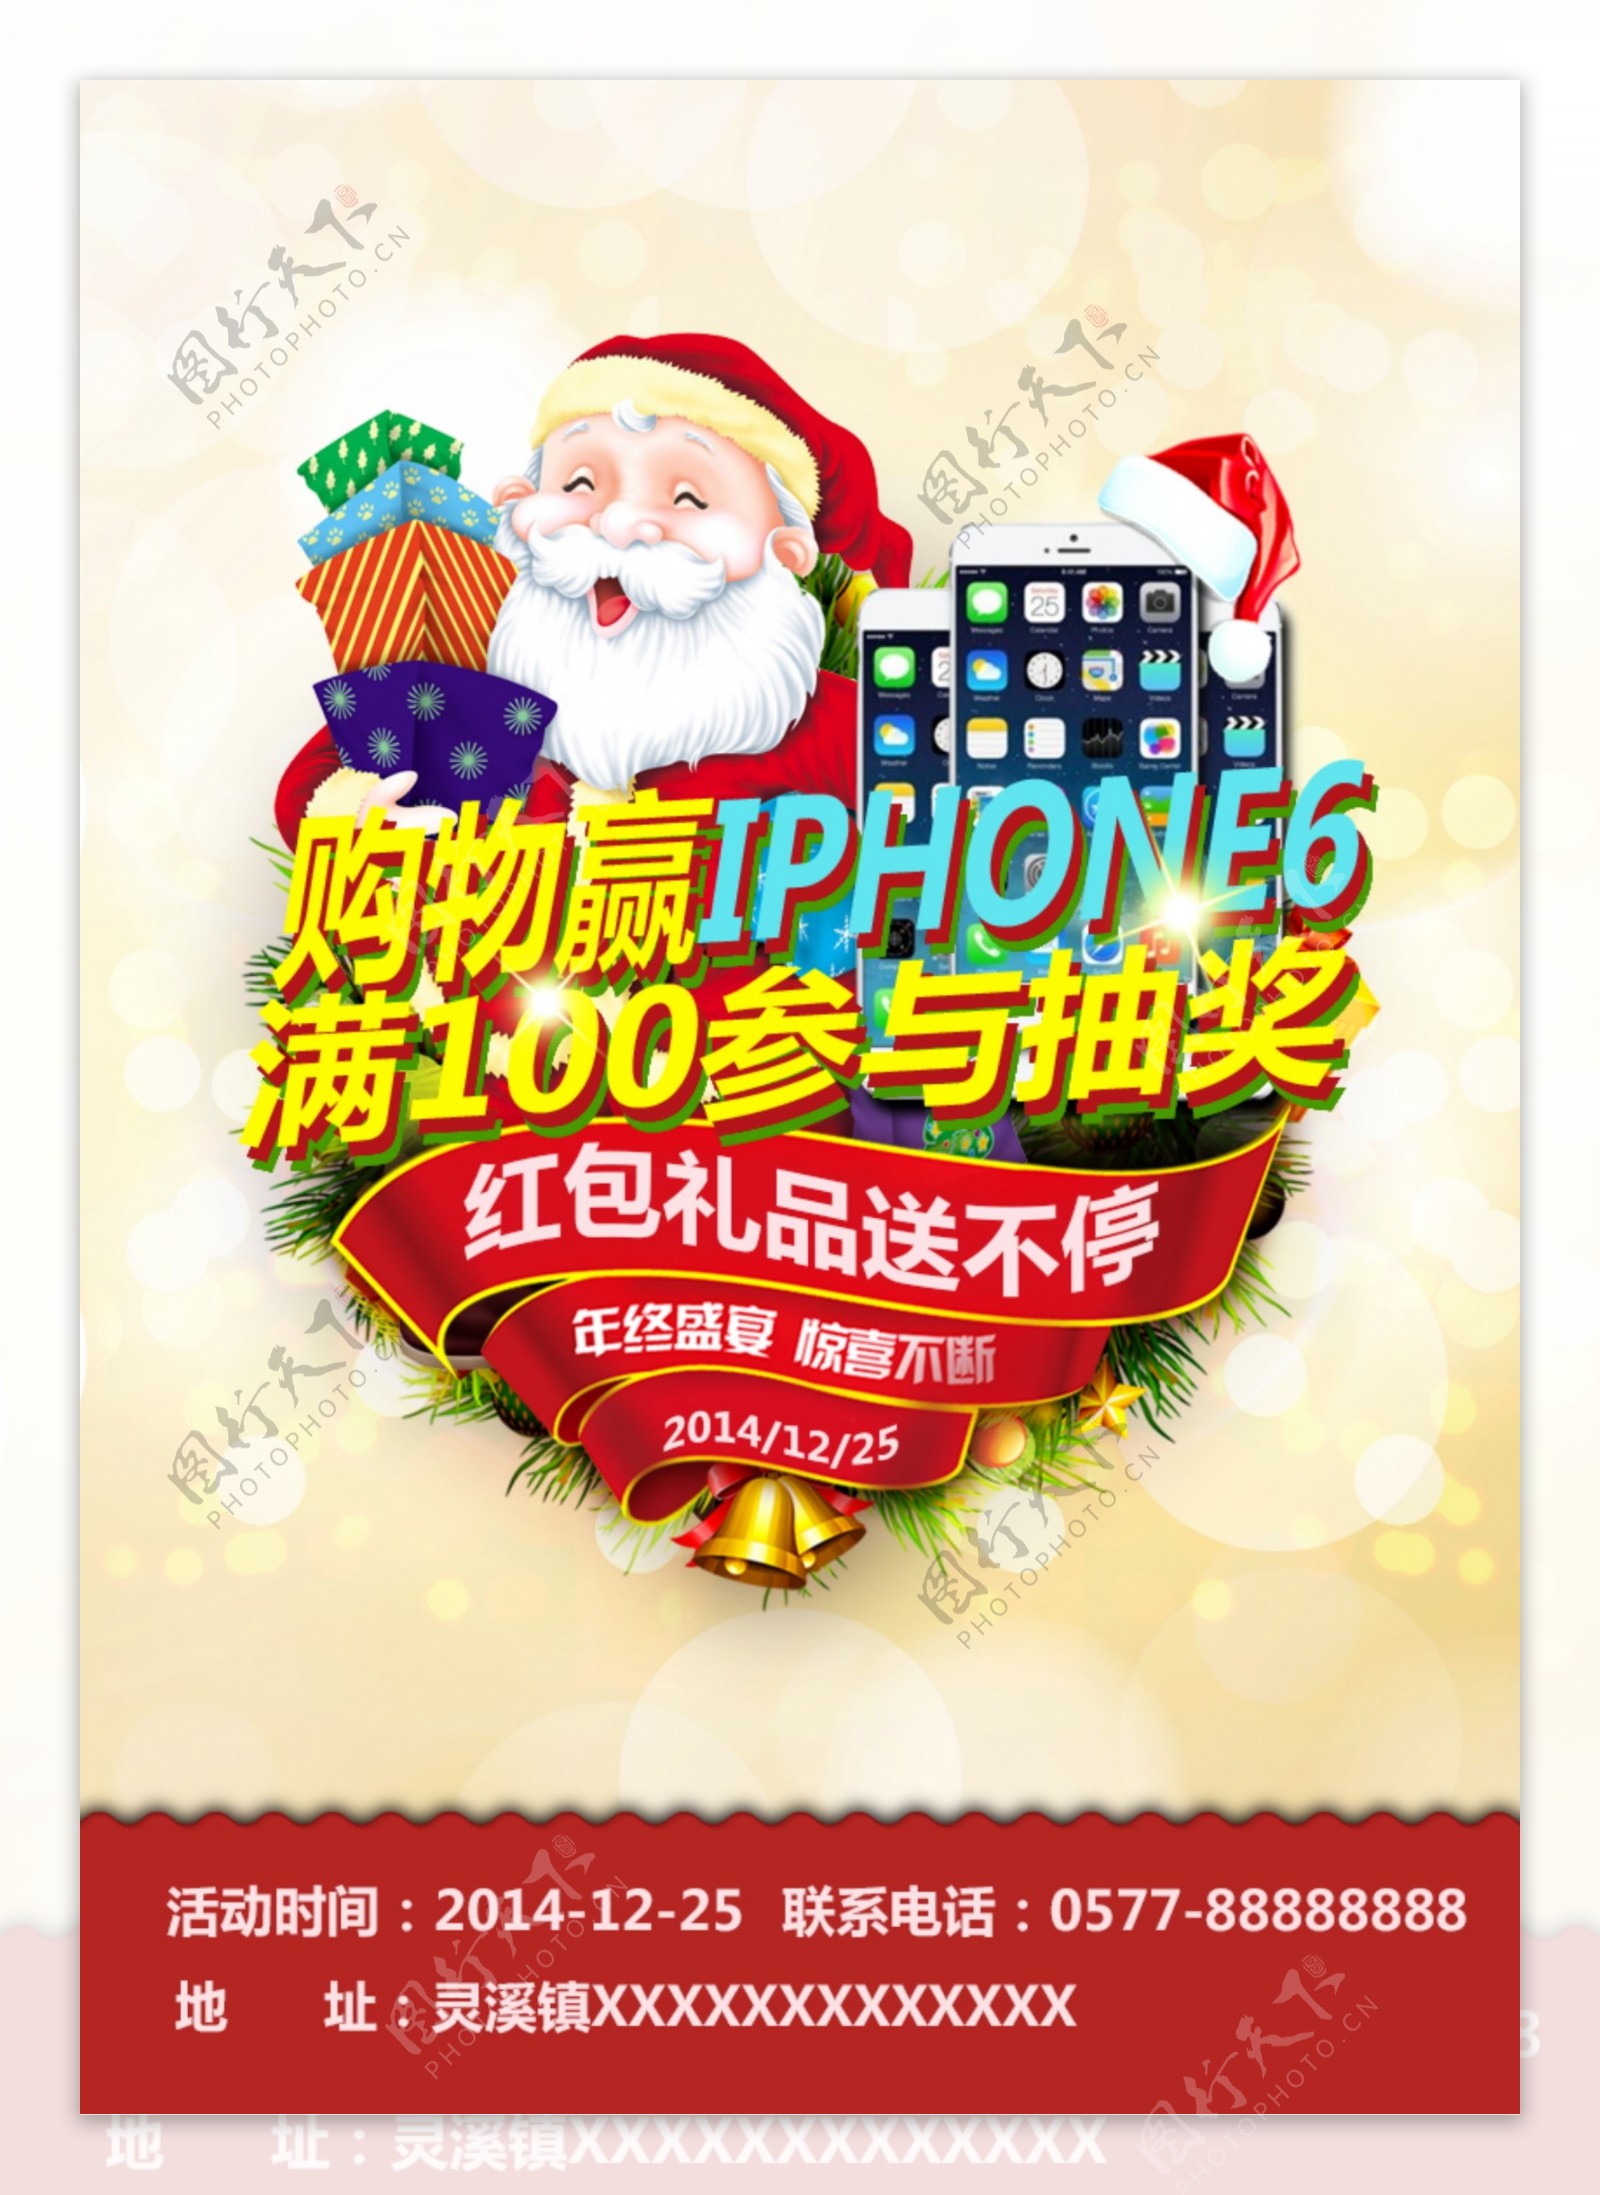 圣诞商场活动购物赢IPHONE6抽奖